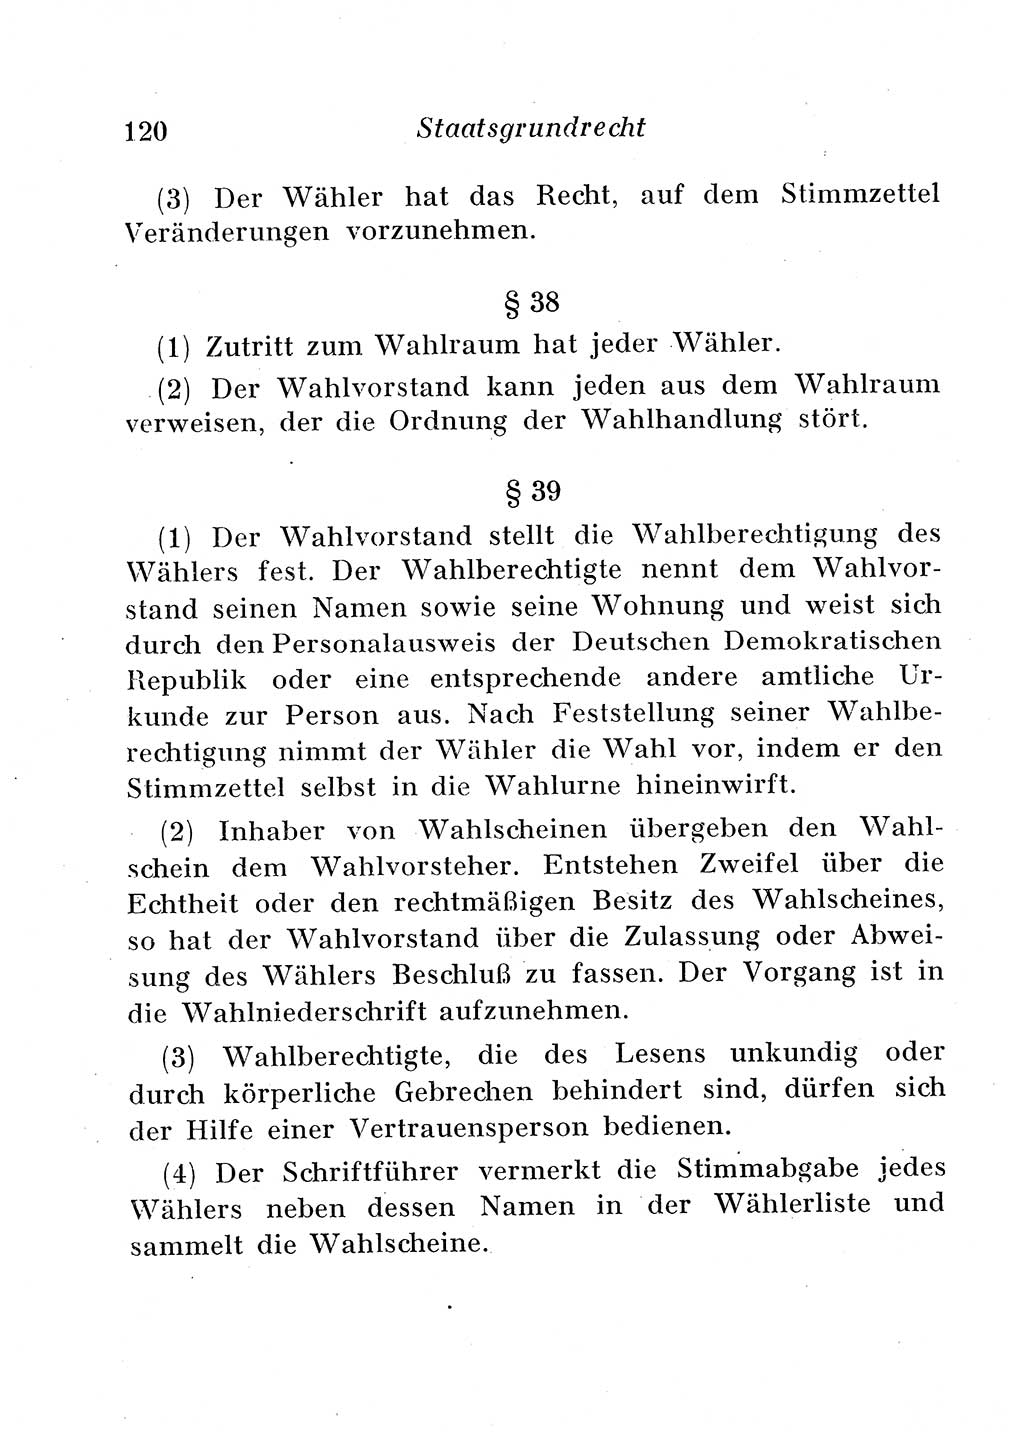 Staats- und verwaltungsrechtliche Gesetze der Deutschen Demokratischen Republik (DDR) 1958, Seite 120 (StVerwR Ges. DDR 1958, S. 120)